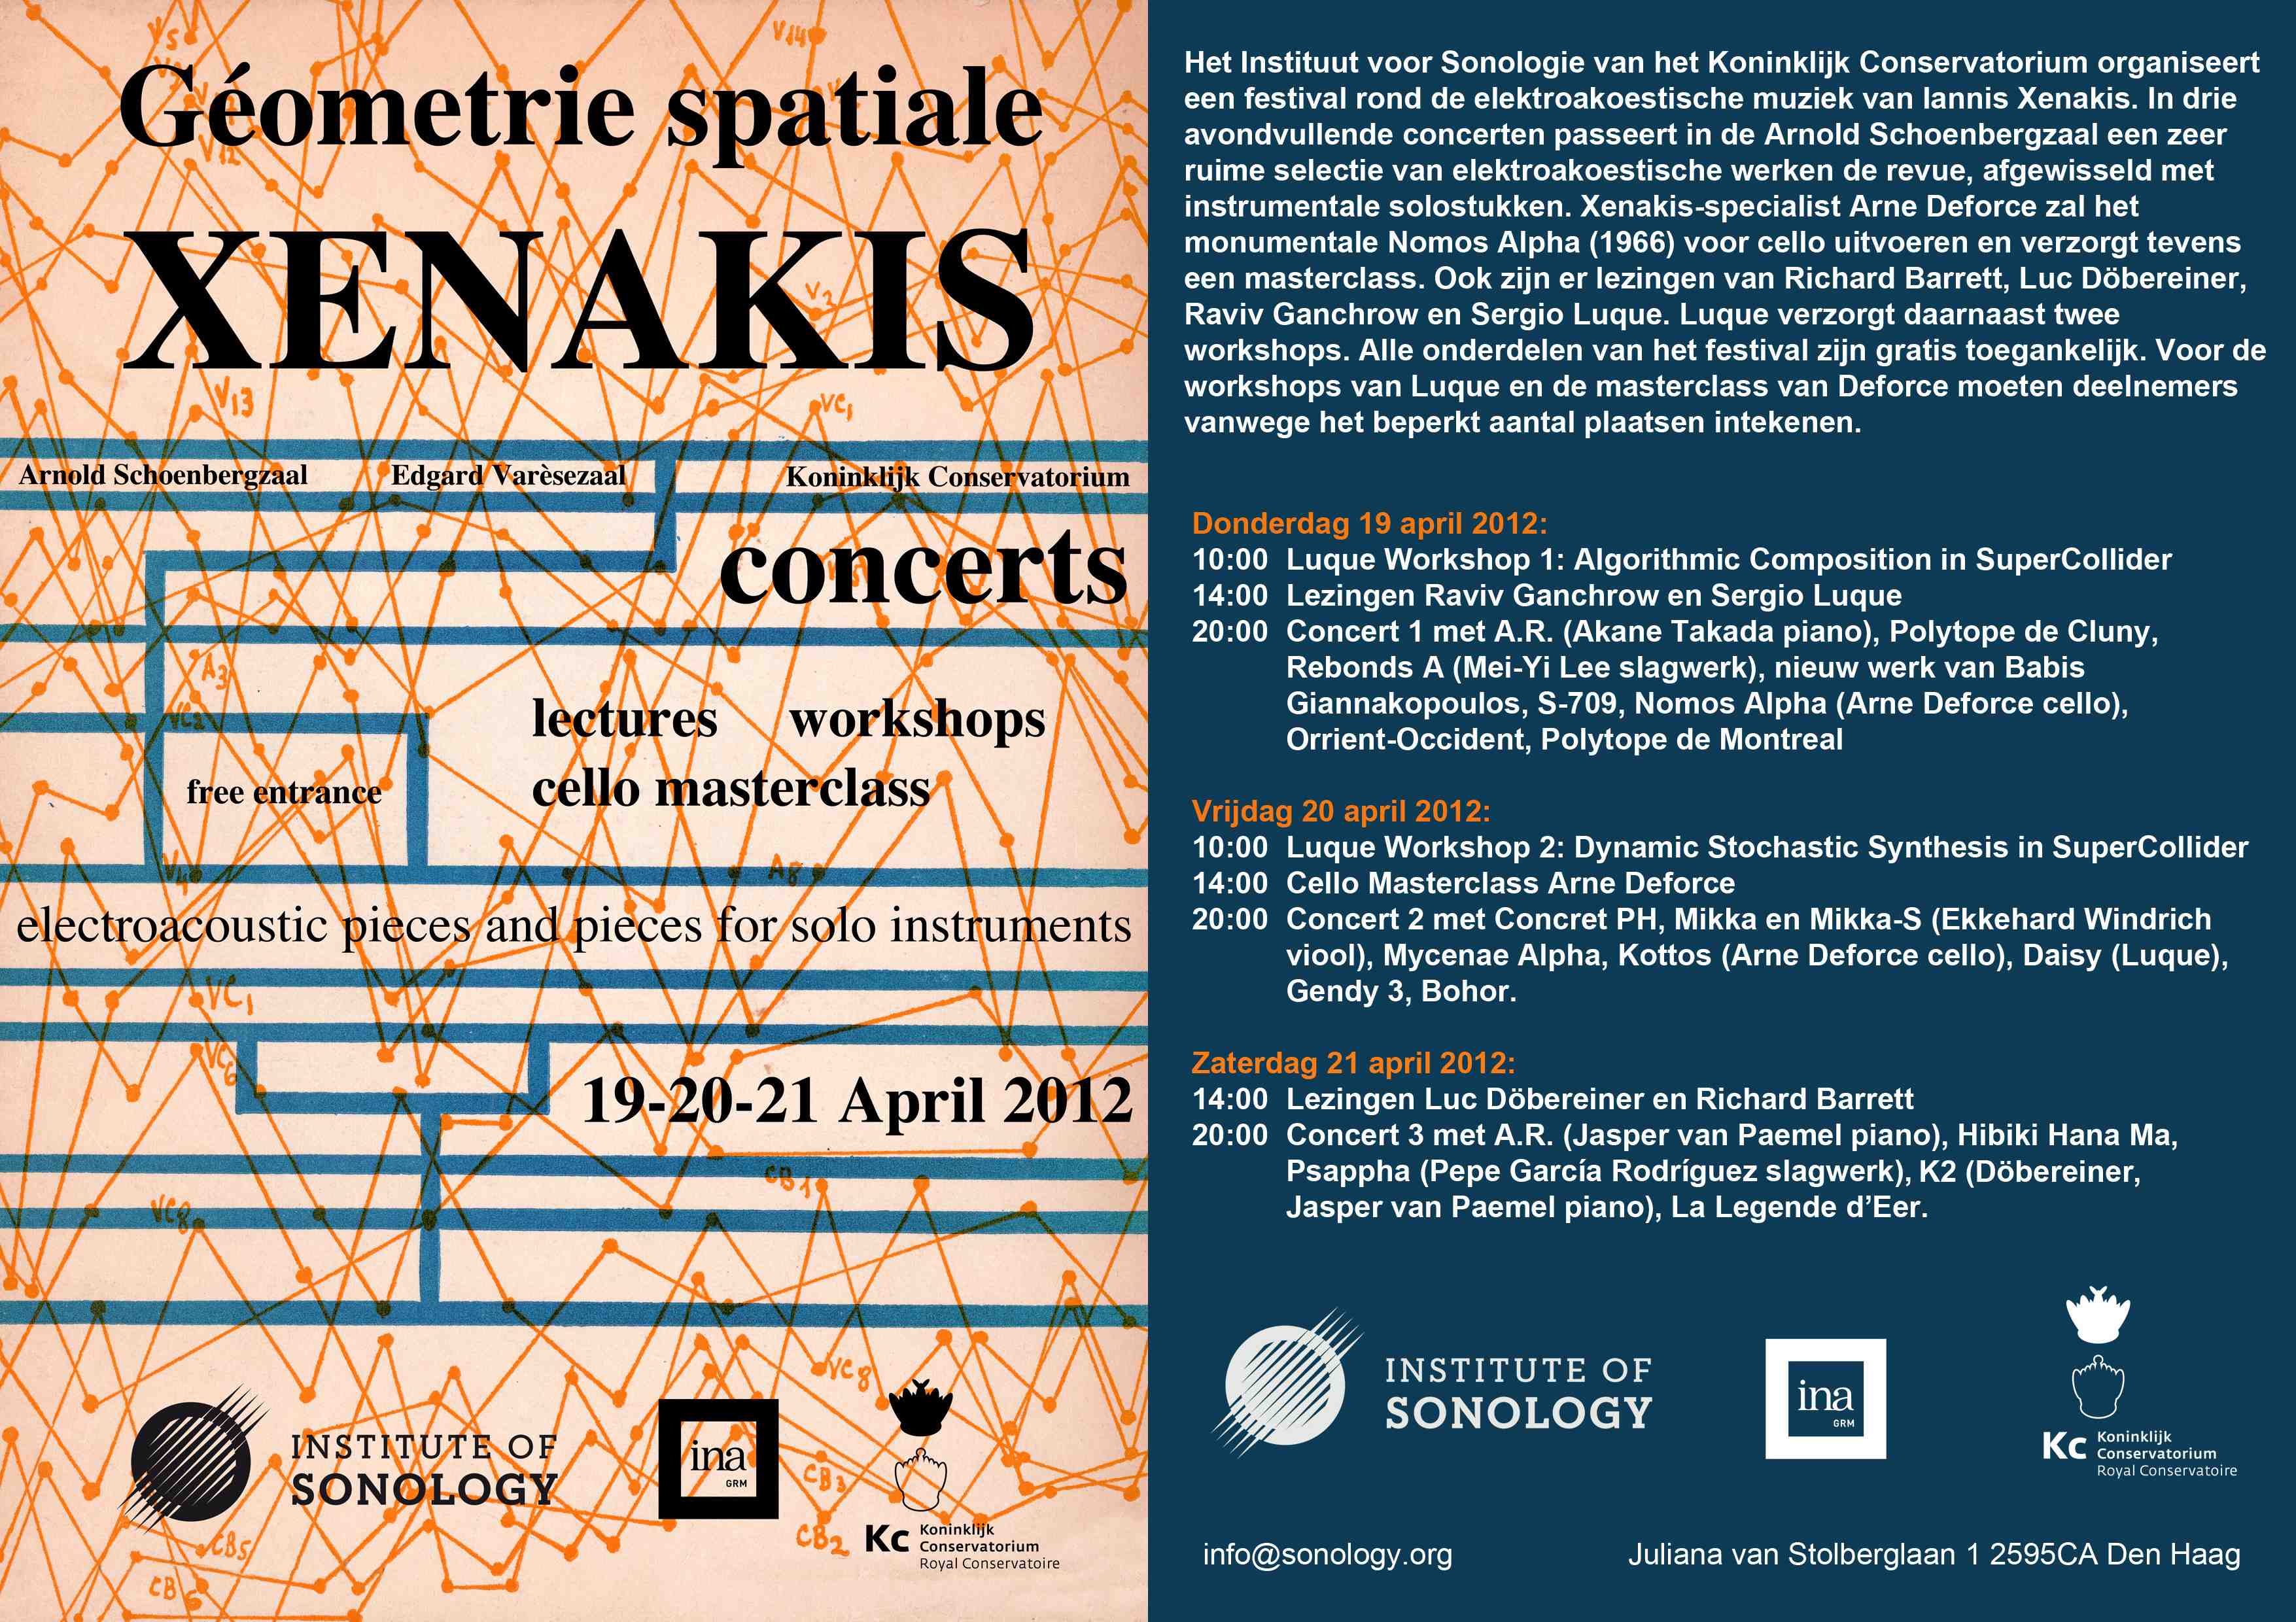 Institute of Sonology - Xenakis Festival